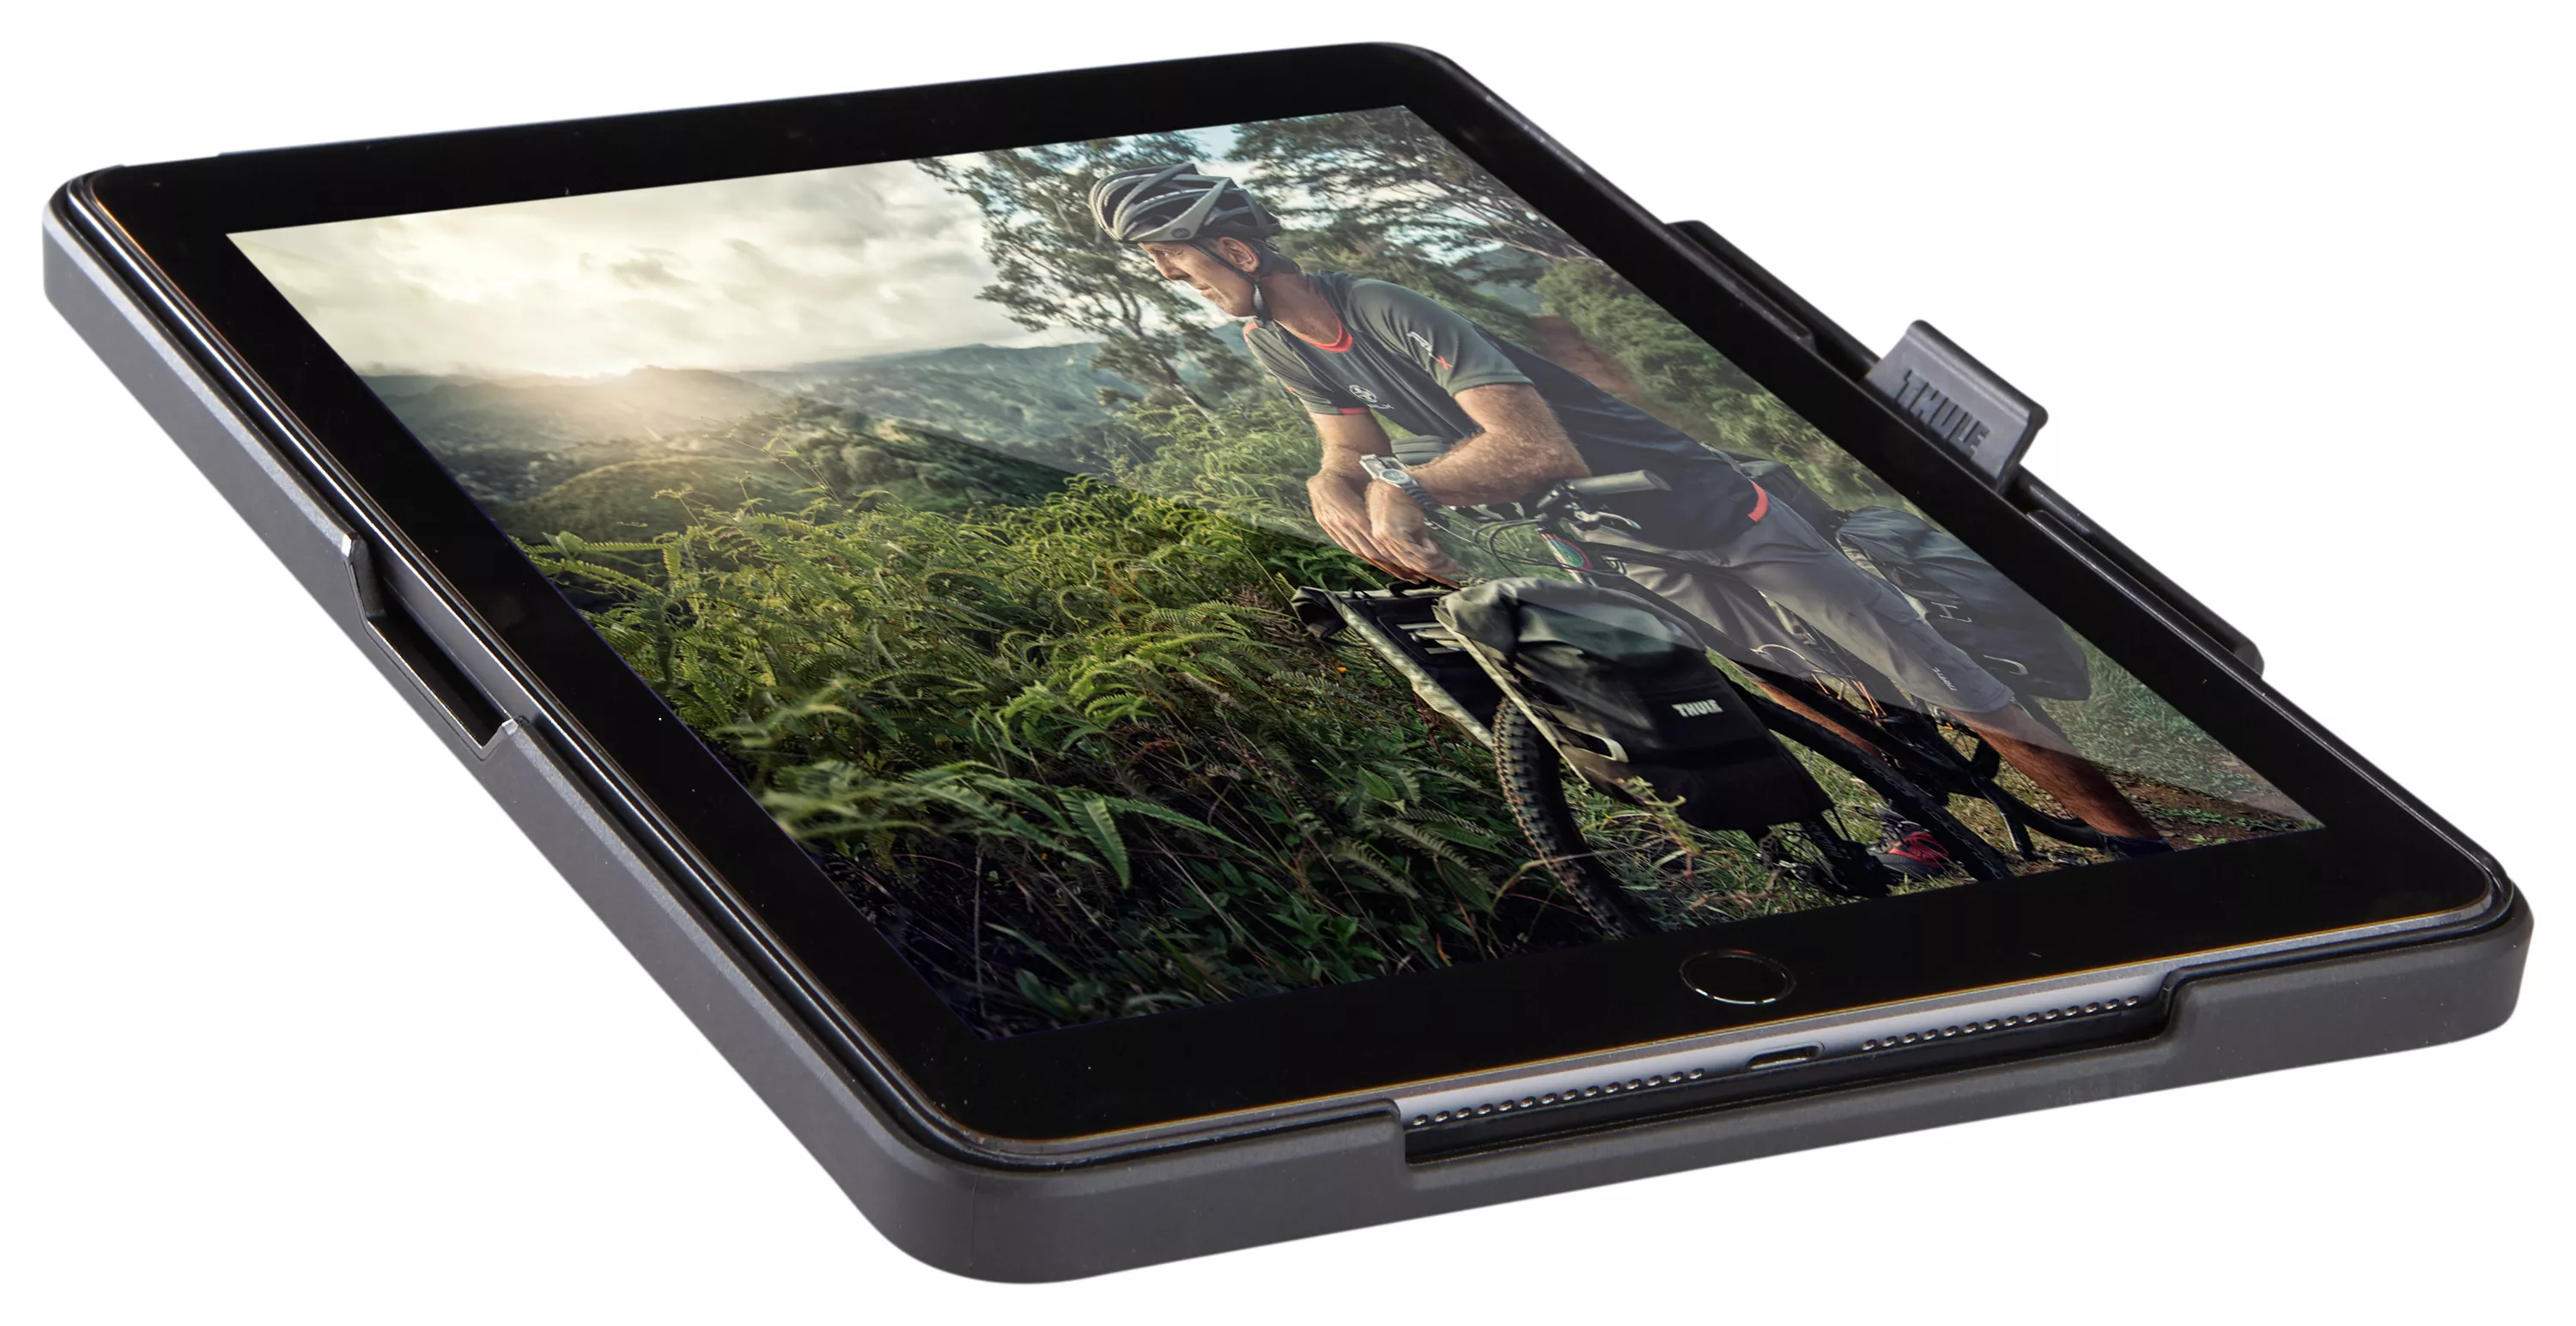 Vente Thule Atmos X3 pour iPad mini 4 Thule au meilleur prix - visuel 8